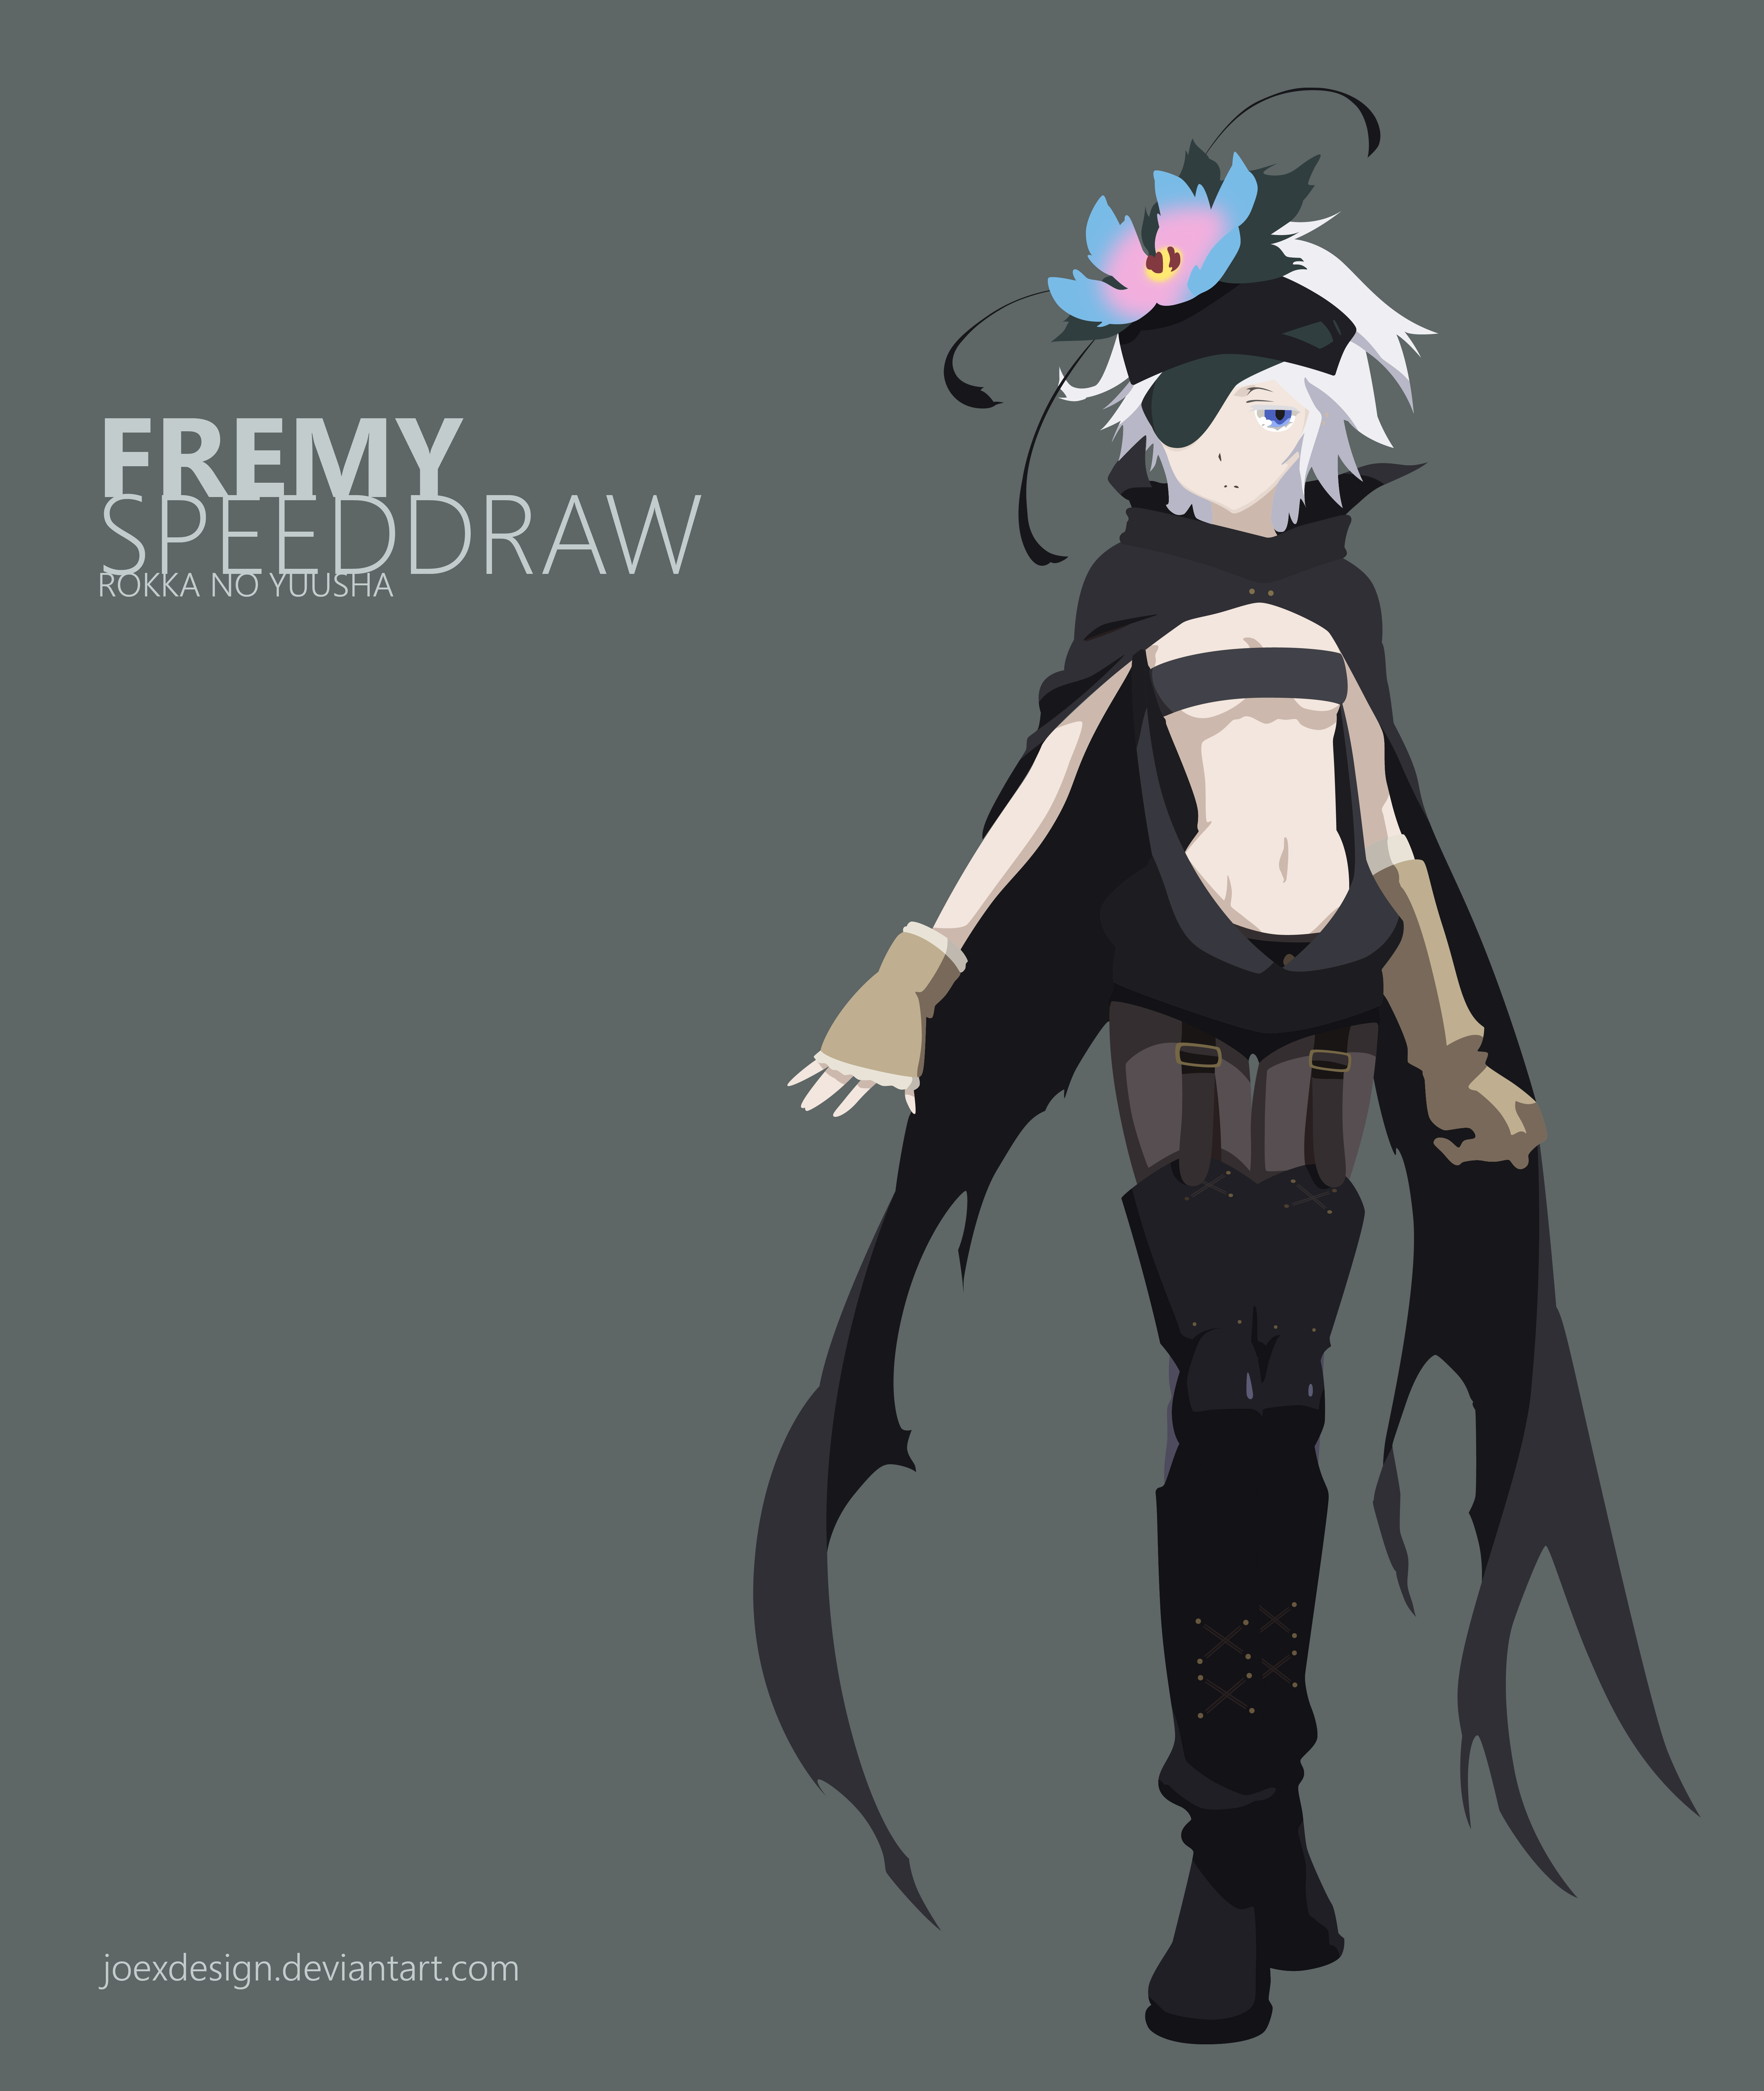 Fremy Speeddraw - Rokka no Yuusha - Image by Tecnomayro #2134461